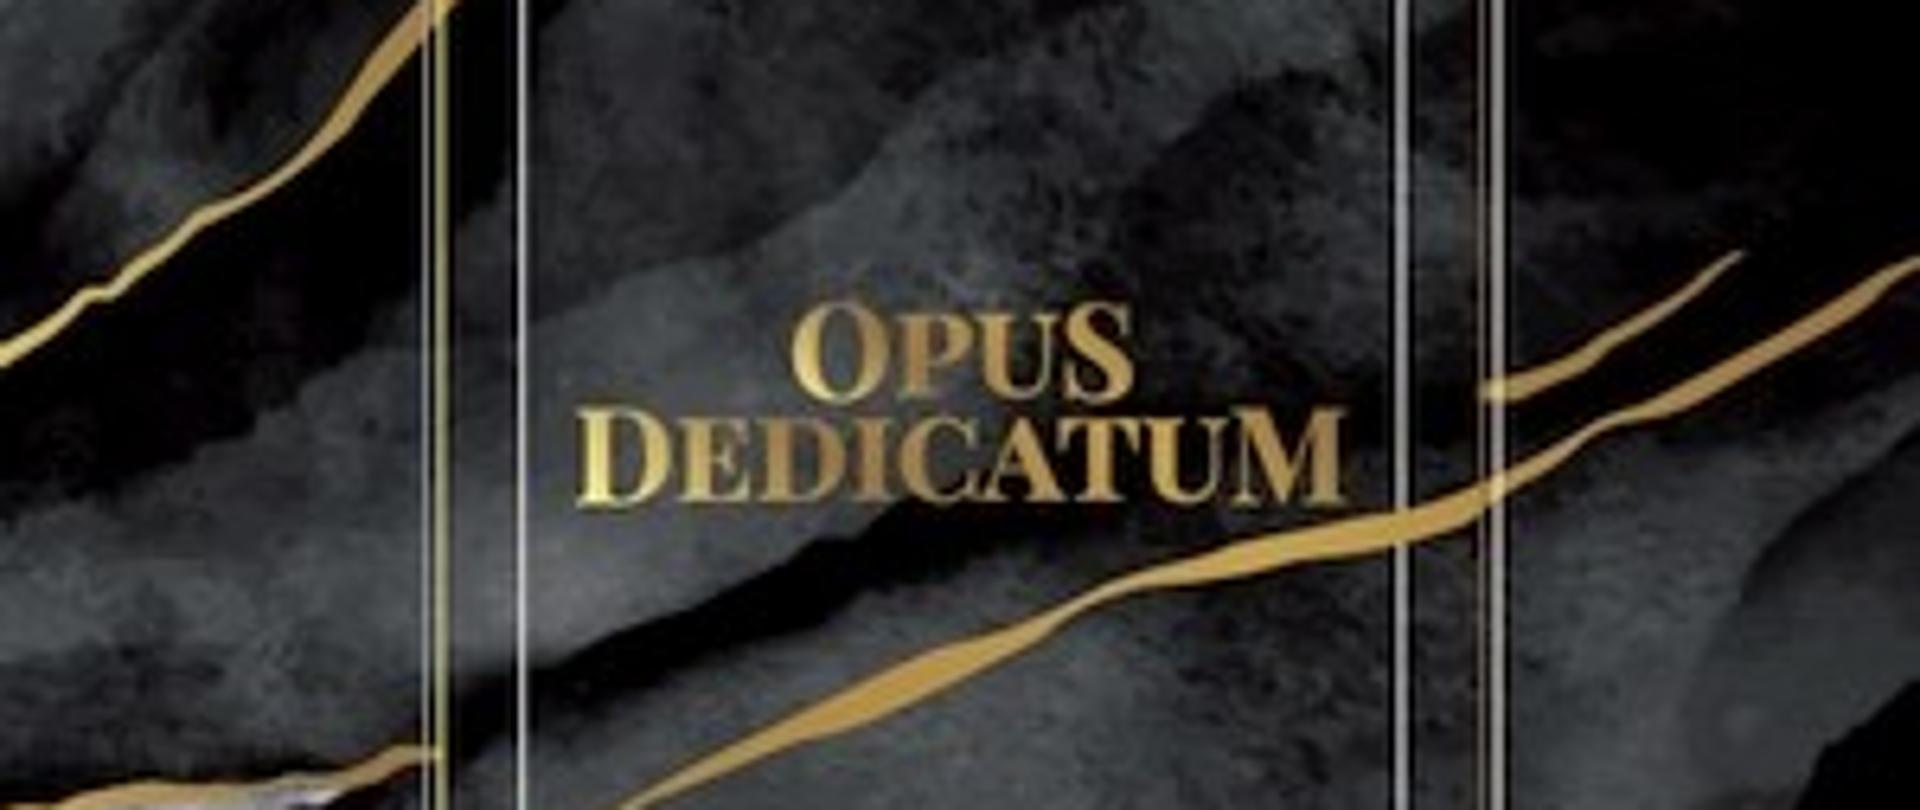 Opus dedicatum